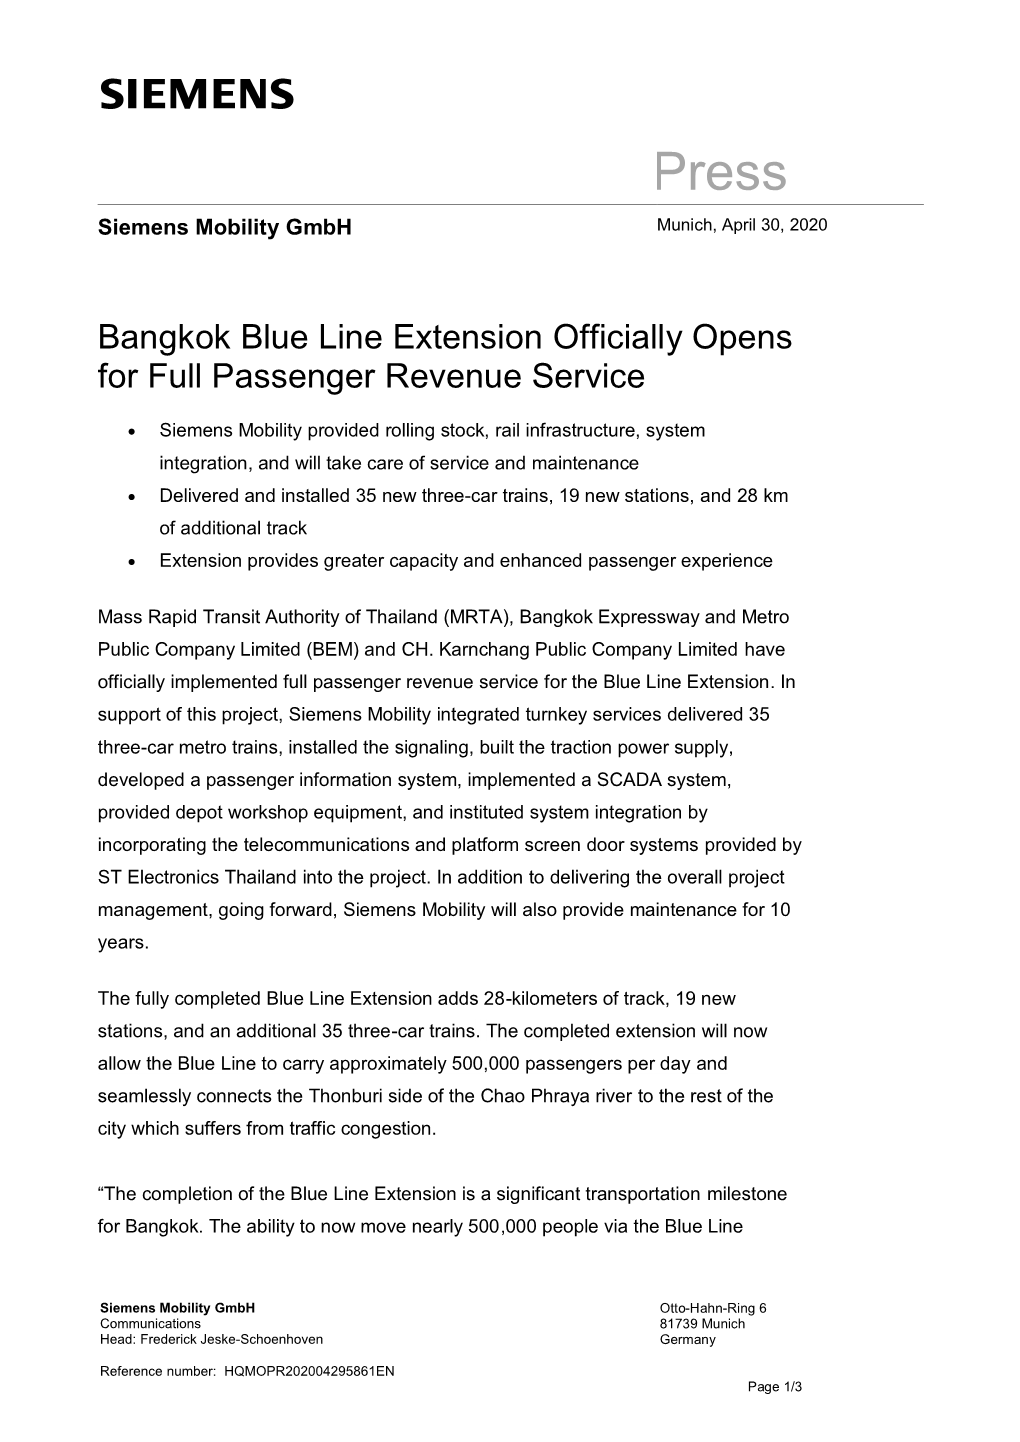 Bangkok Blue Line Extension Officially Opens for Full Passenger Revenue Service